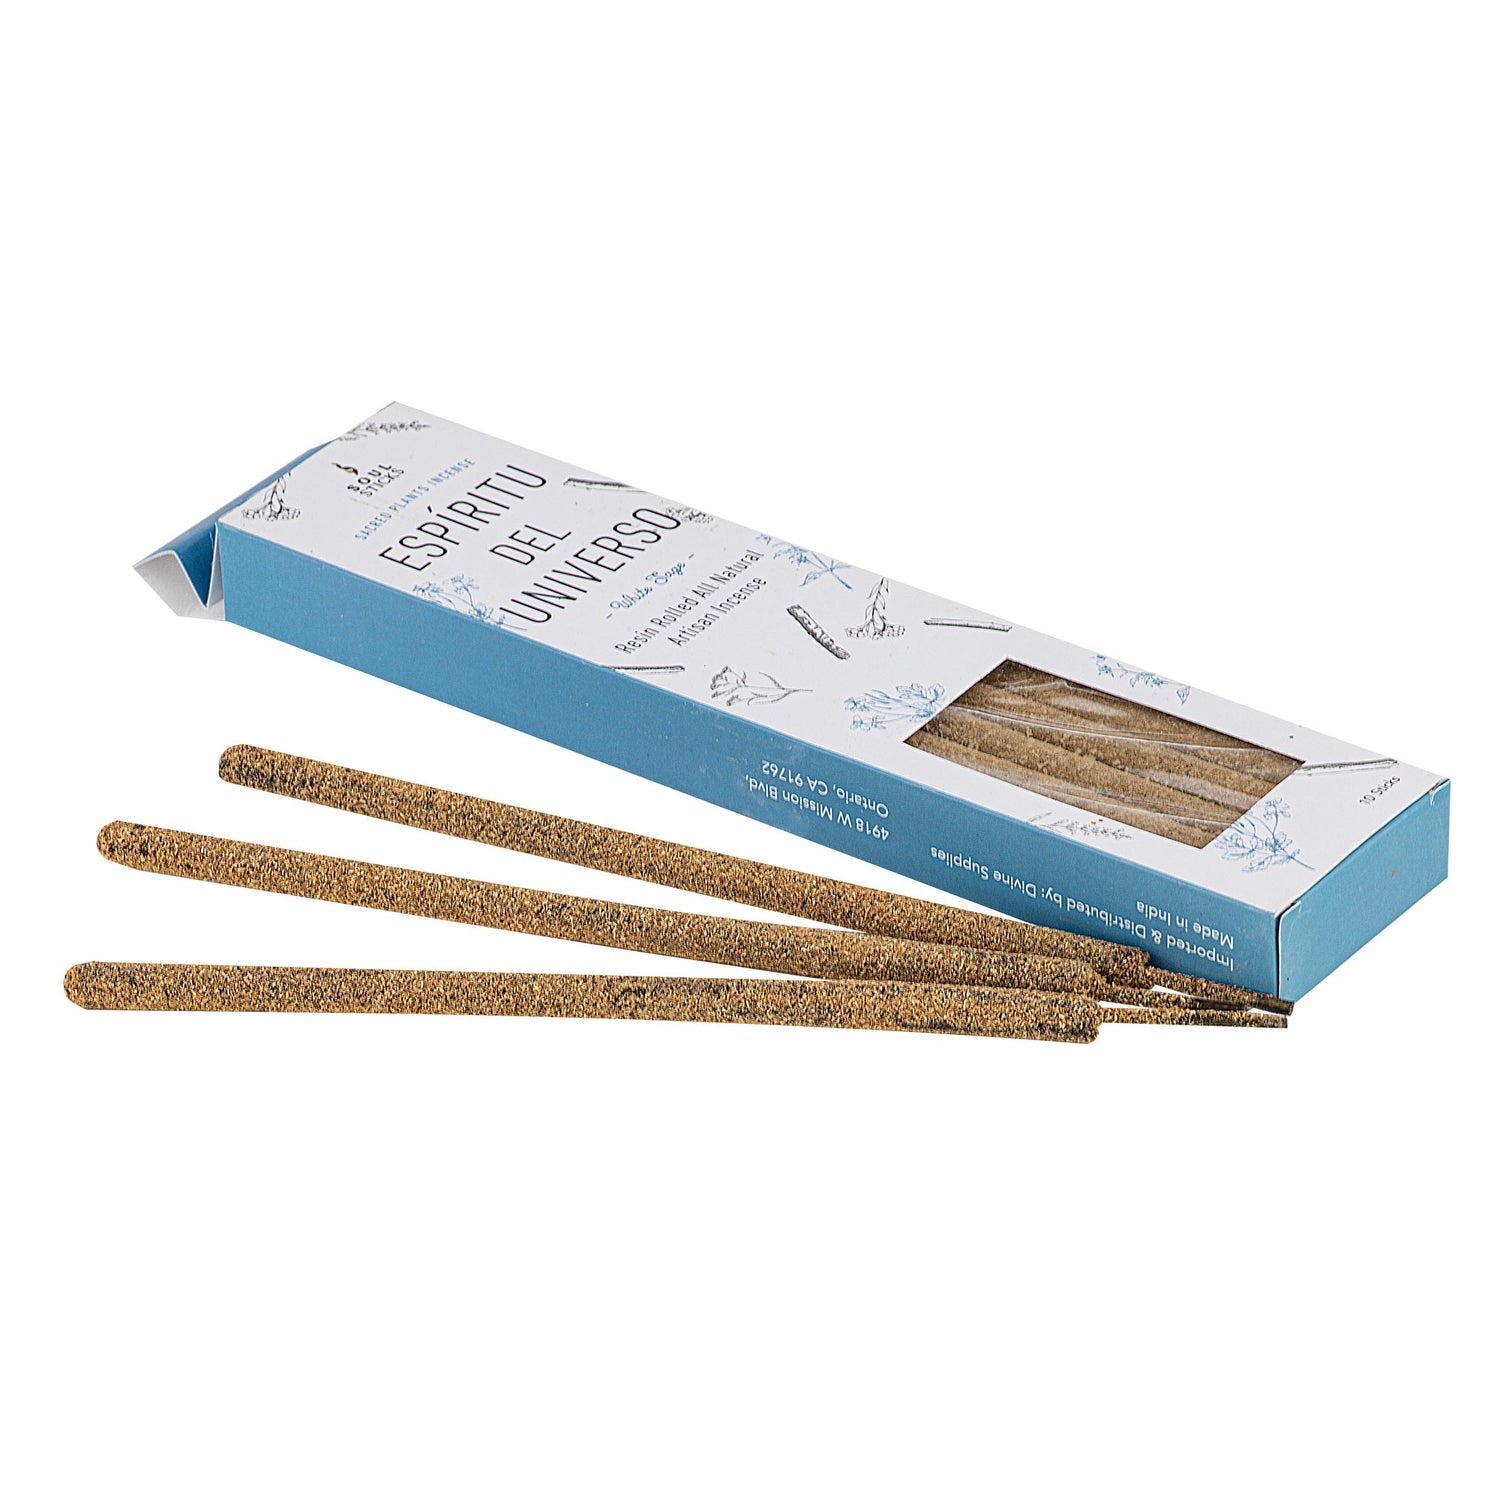 Resin Rolled Artisan Incense 10 sticks - White Sage - Altasphere